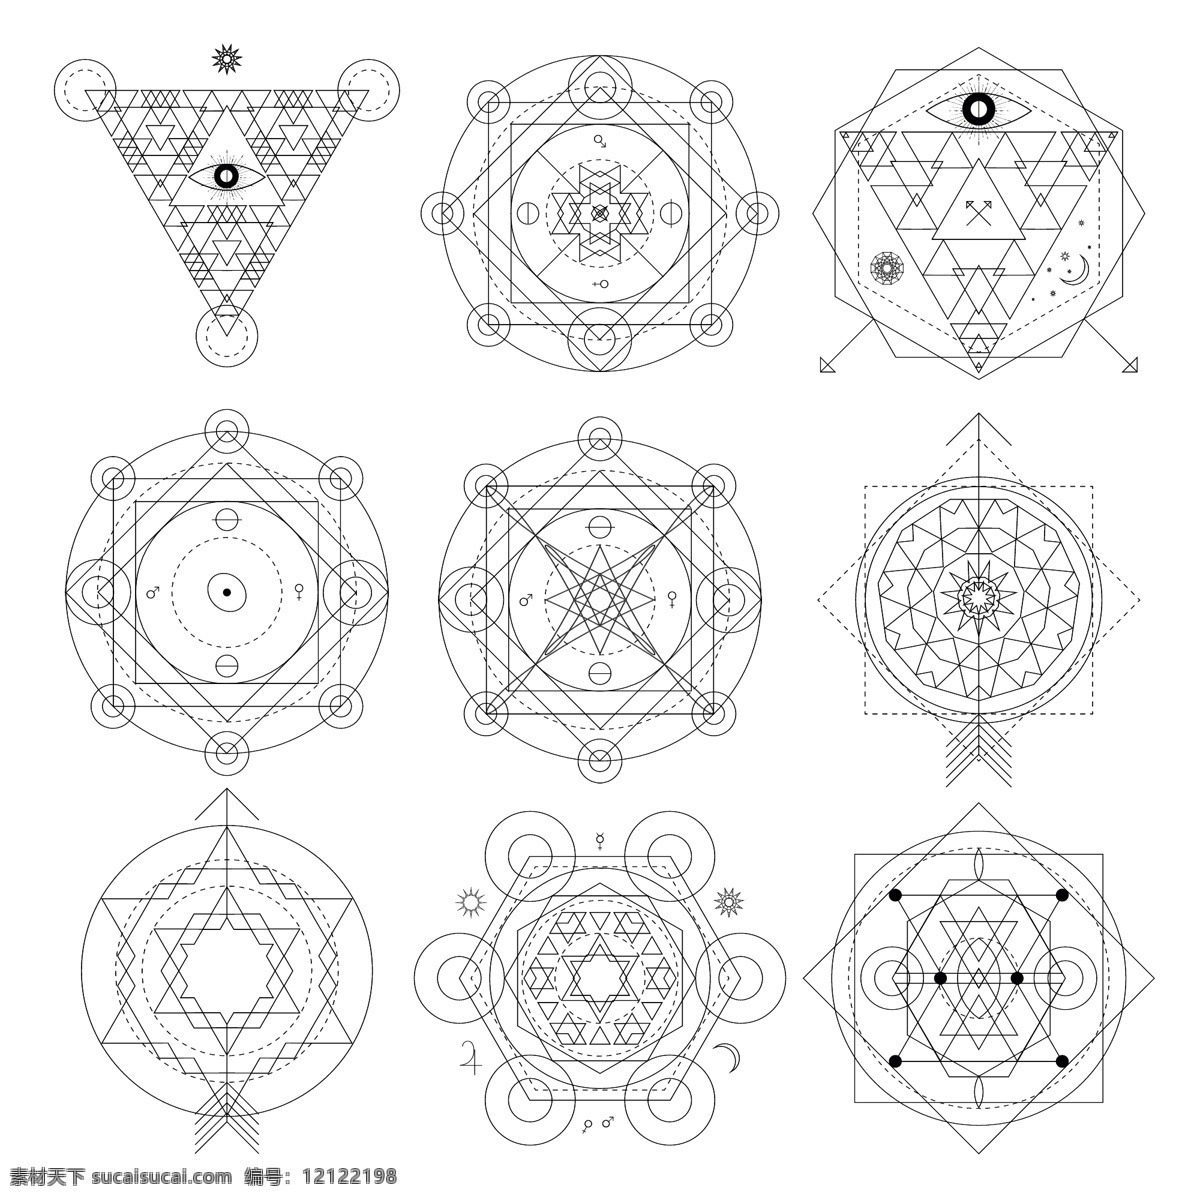 设计印刷 几何 多边形 创意 法 阵 矢量 平面 星阵 线条 圆形 法阵 点状 黑白